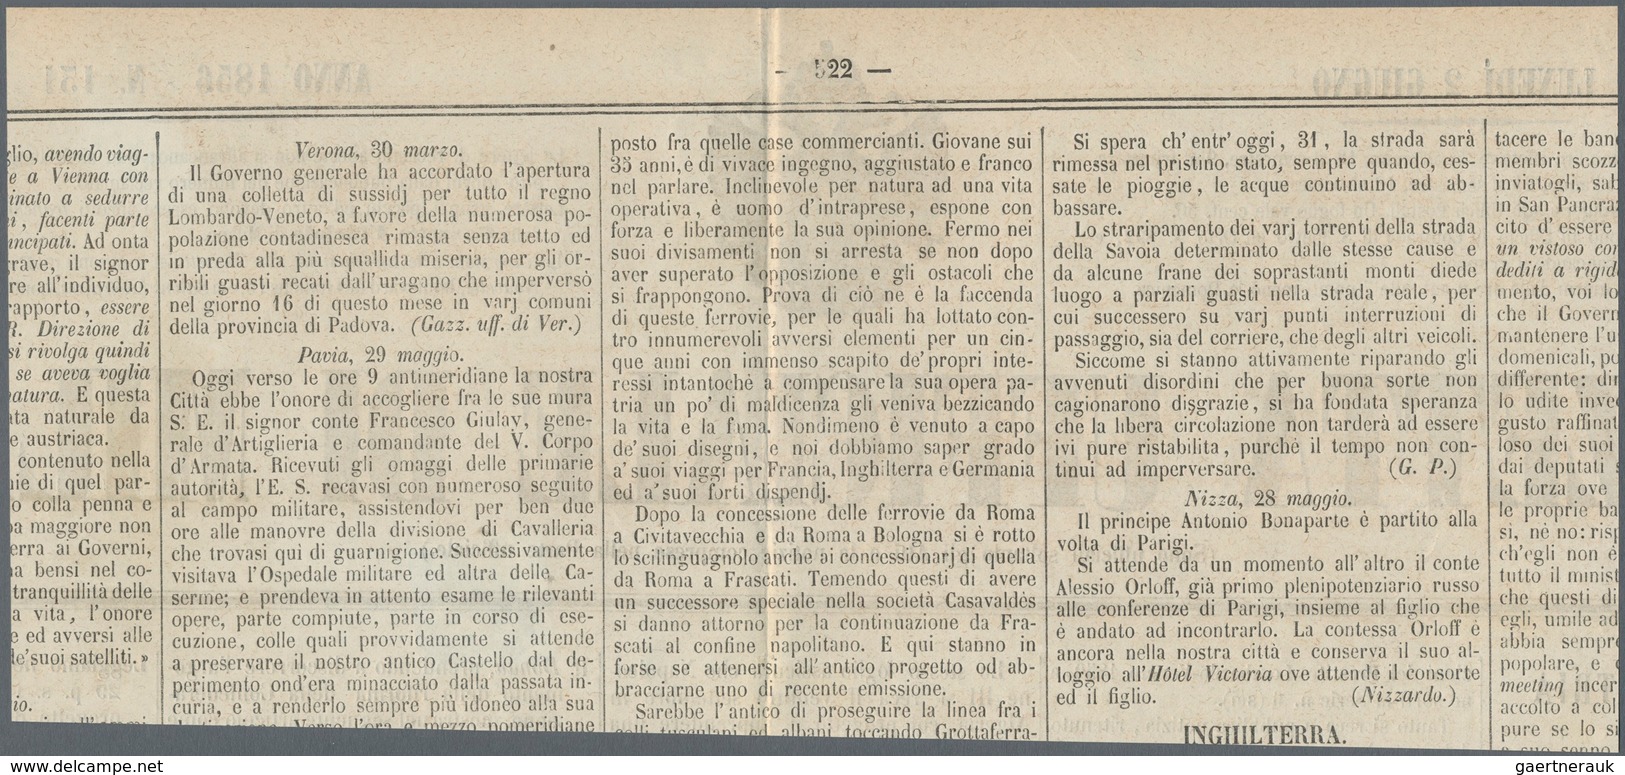 00791 Italien - Altitalienische Staaten: Parma - Zeitungsstempelmarken: 1853, Postage Due Stamp For Newspa - Parma